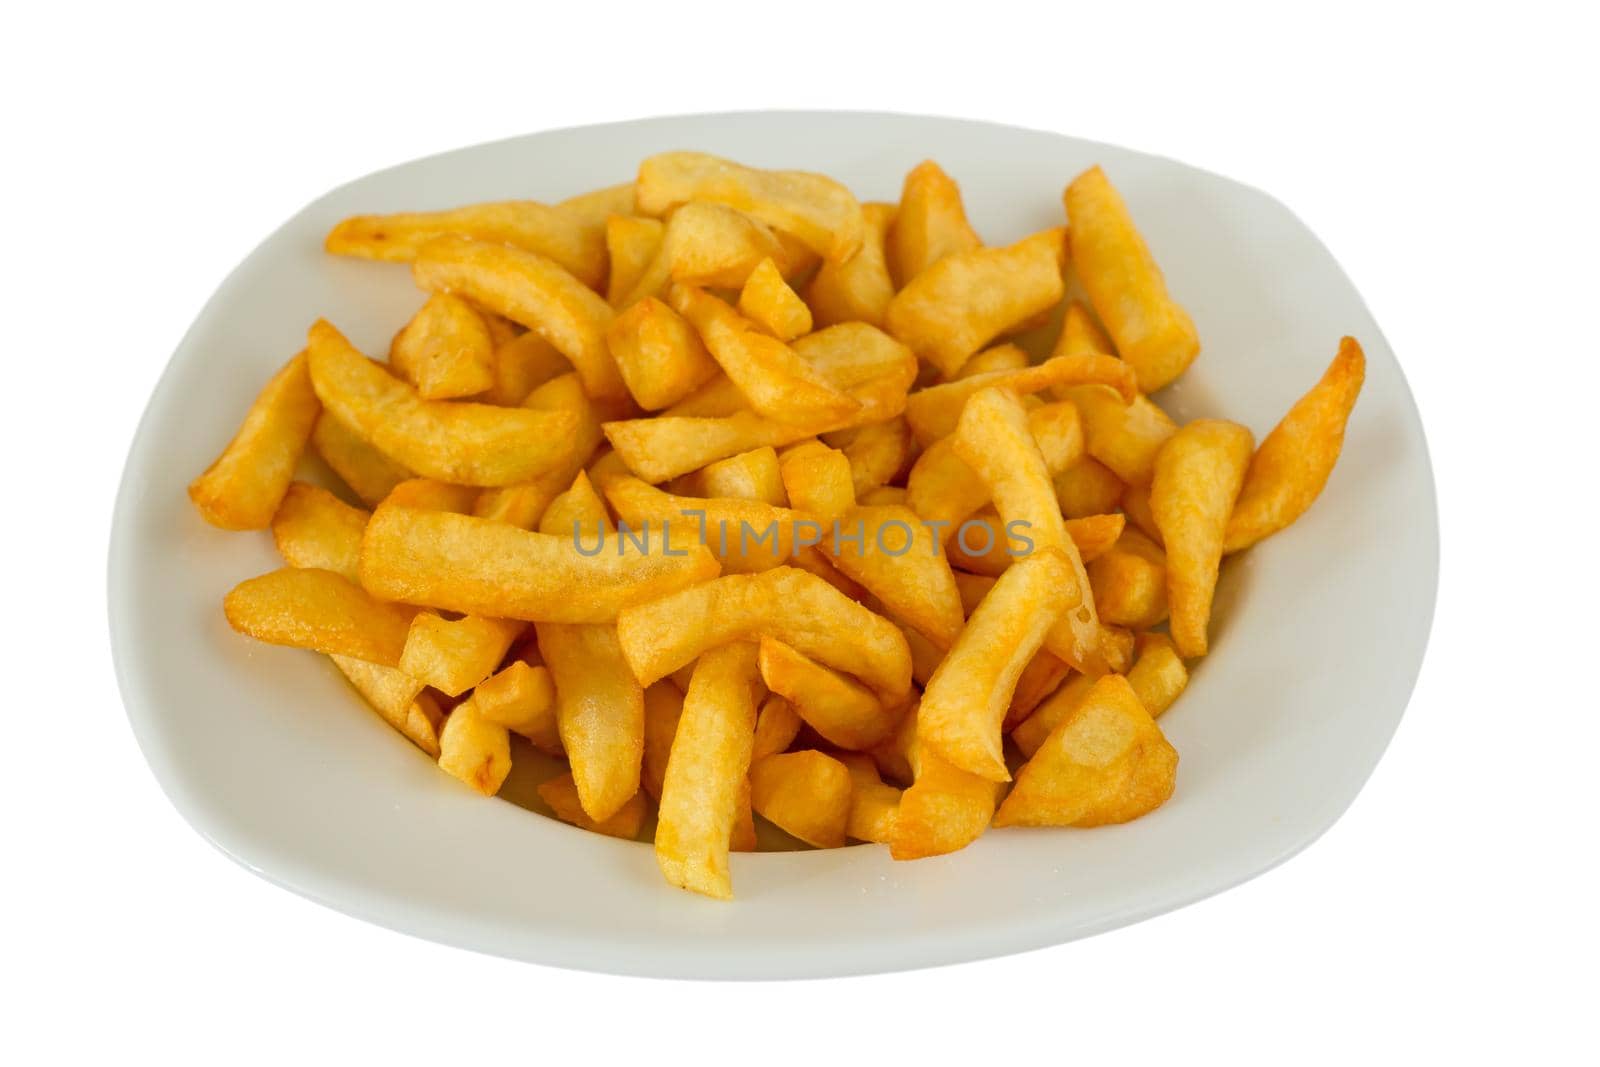 french fries by FerradalFCG